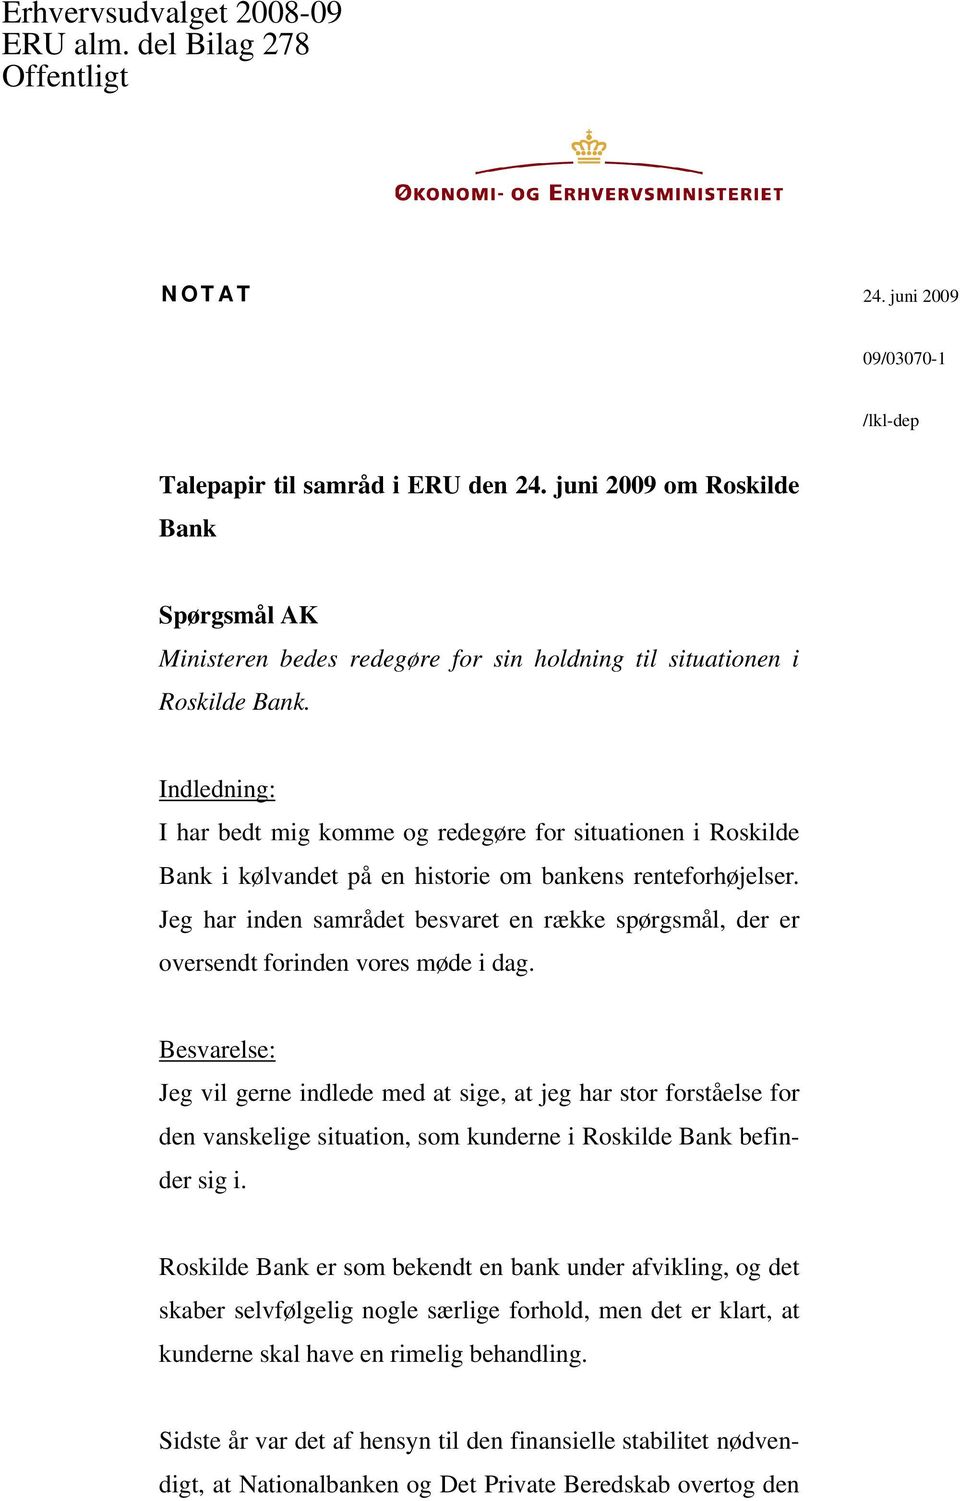 Indledning: I har bedt mig komme og redegøre for situationen i Roskilde Bank i kølvandet på en historie om bankens renteforhøjelser.